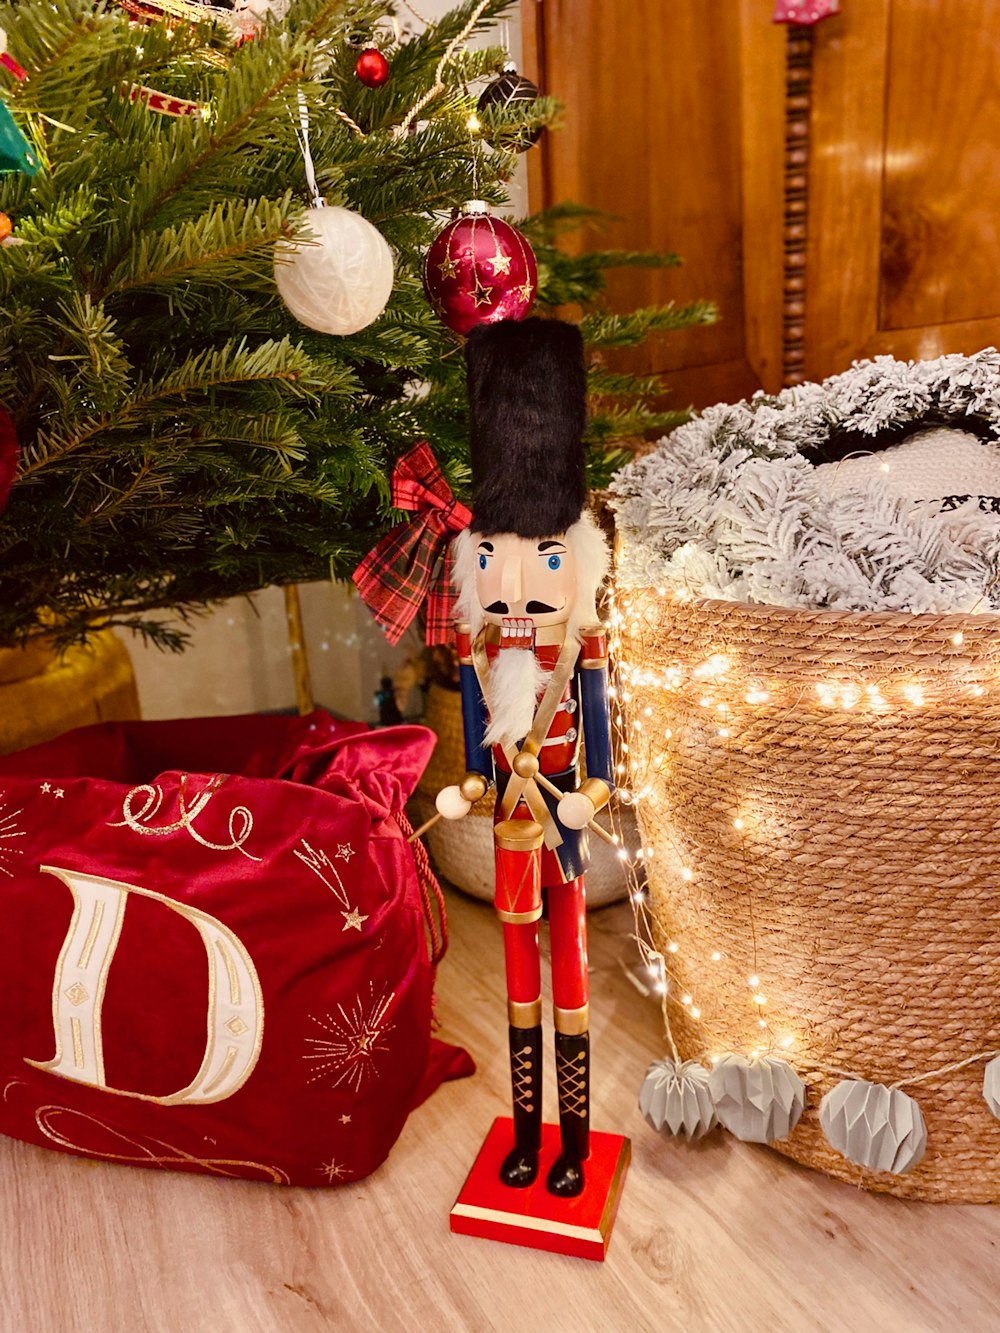 a nutcracker figurine next to a christmas tree